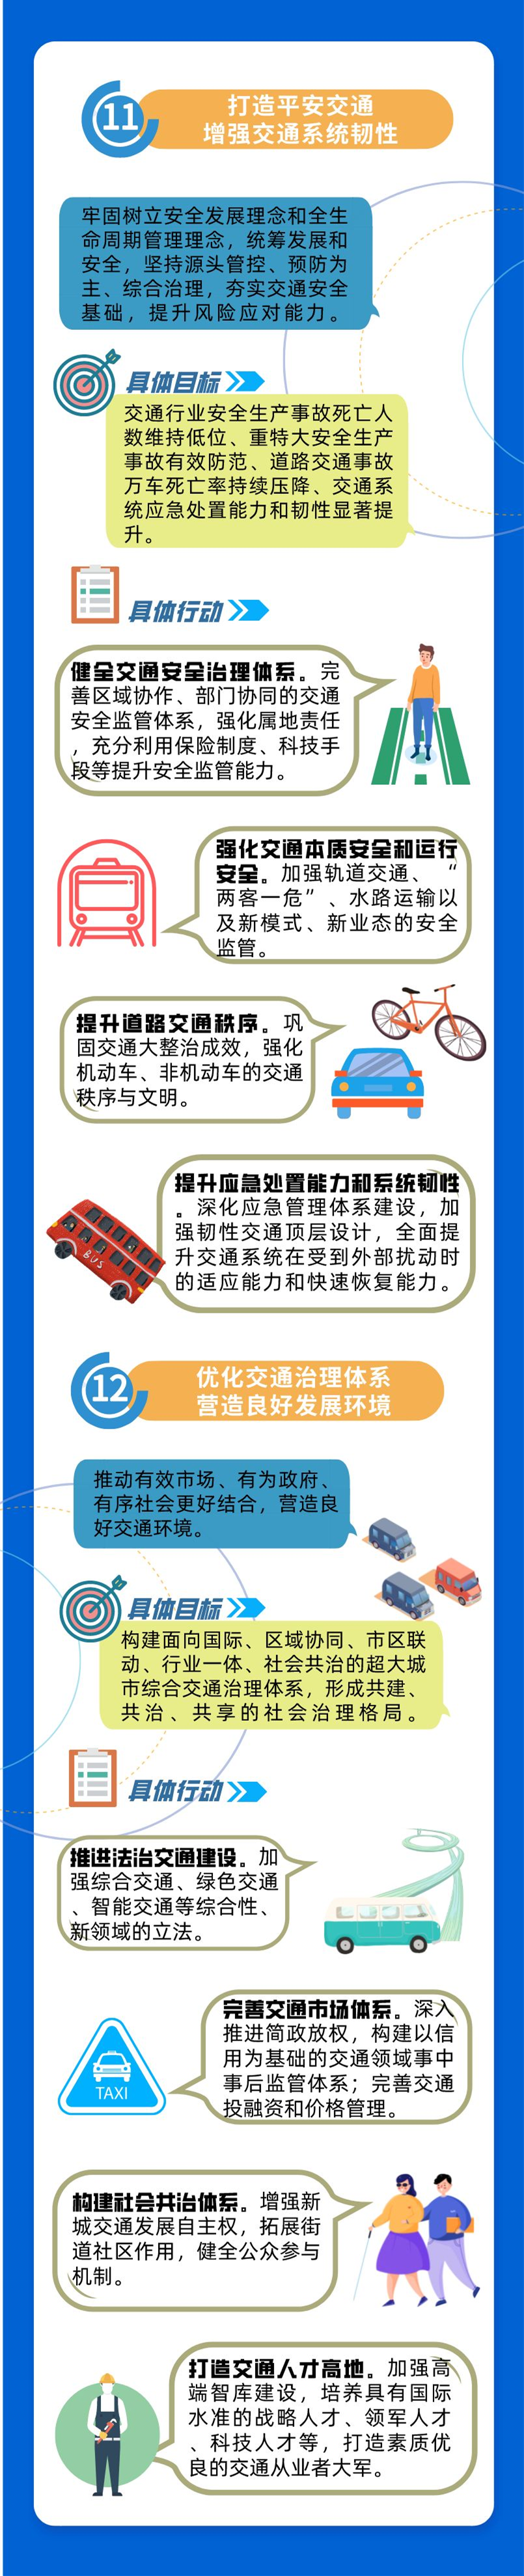 一图读懂 新一轮《上海市交通发展白皮书》7.png